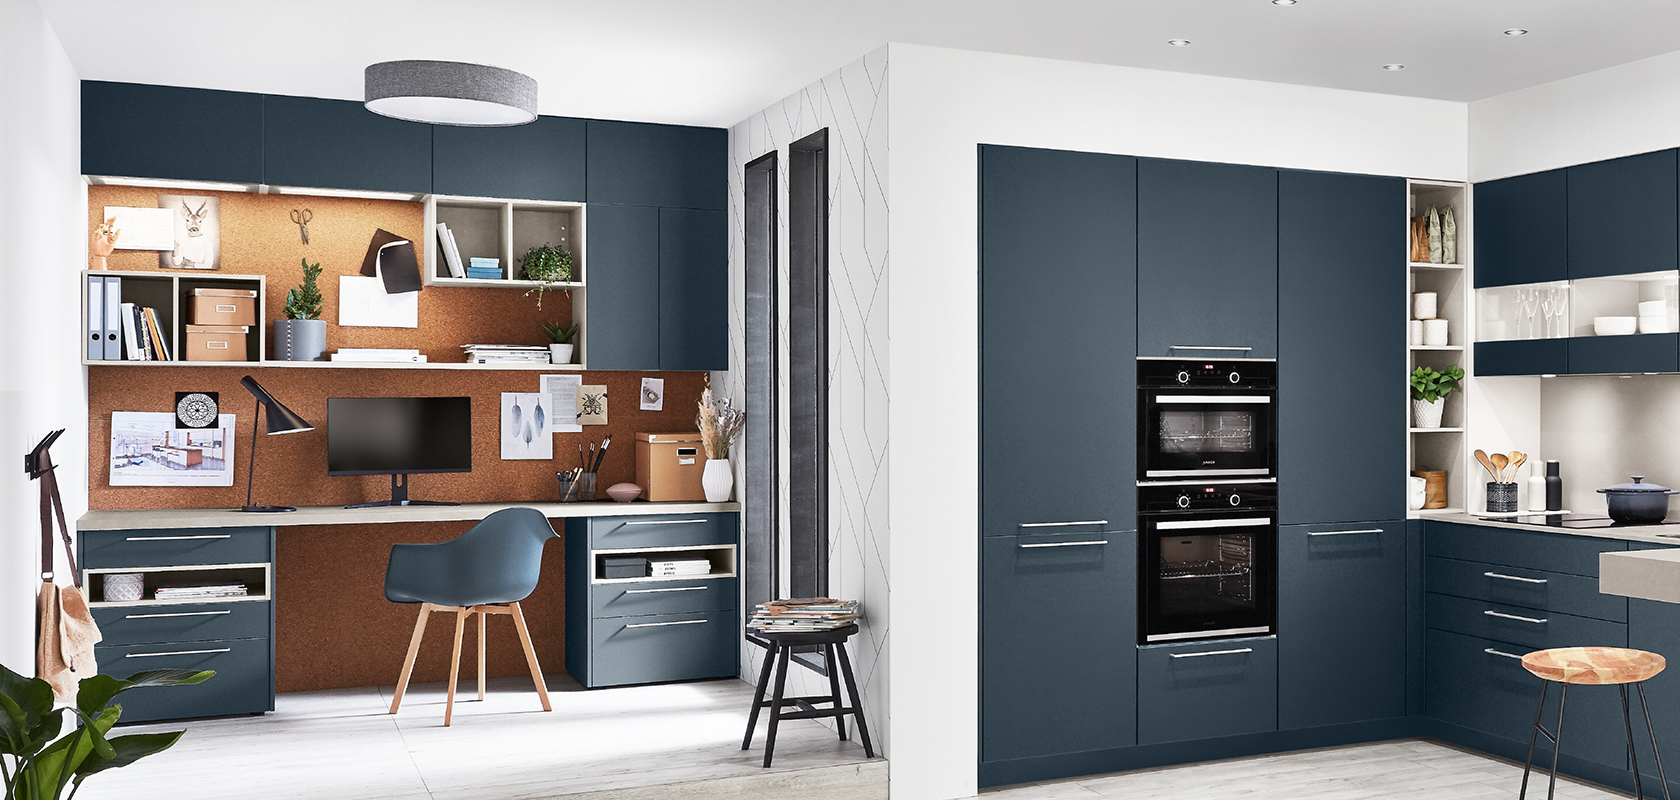 Stilvolle Home-Office-Ecke in einer Küche mit einem zeitgenössischen Schreibtisch, Regalen und minimalistischen Schränken in einem abgestimmten blauen und Holz-Finish.